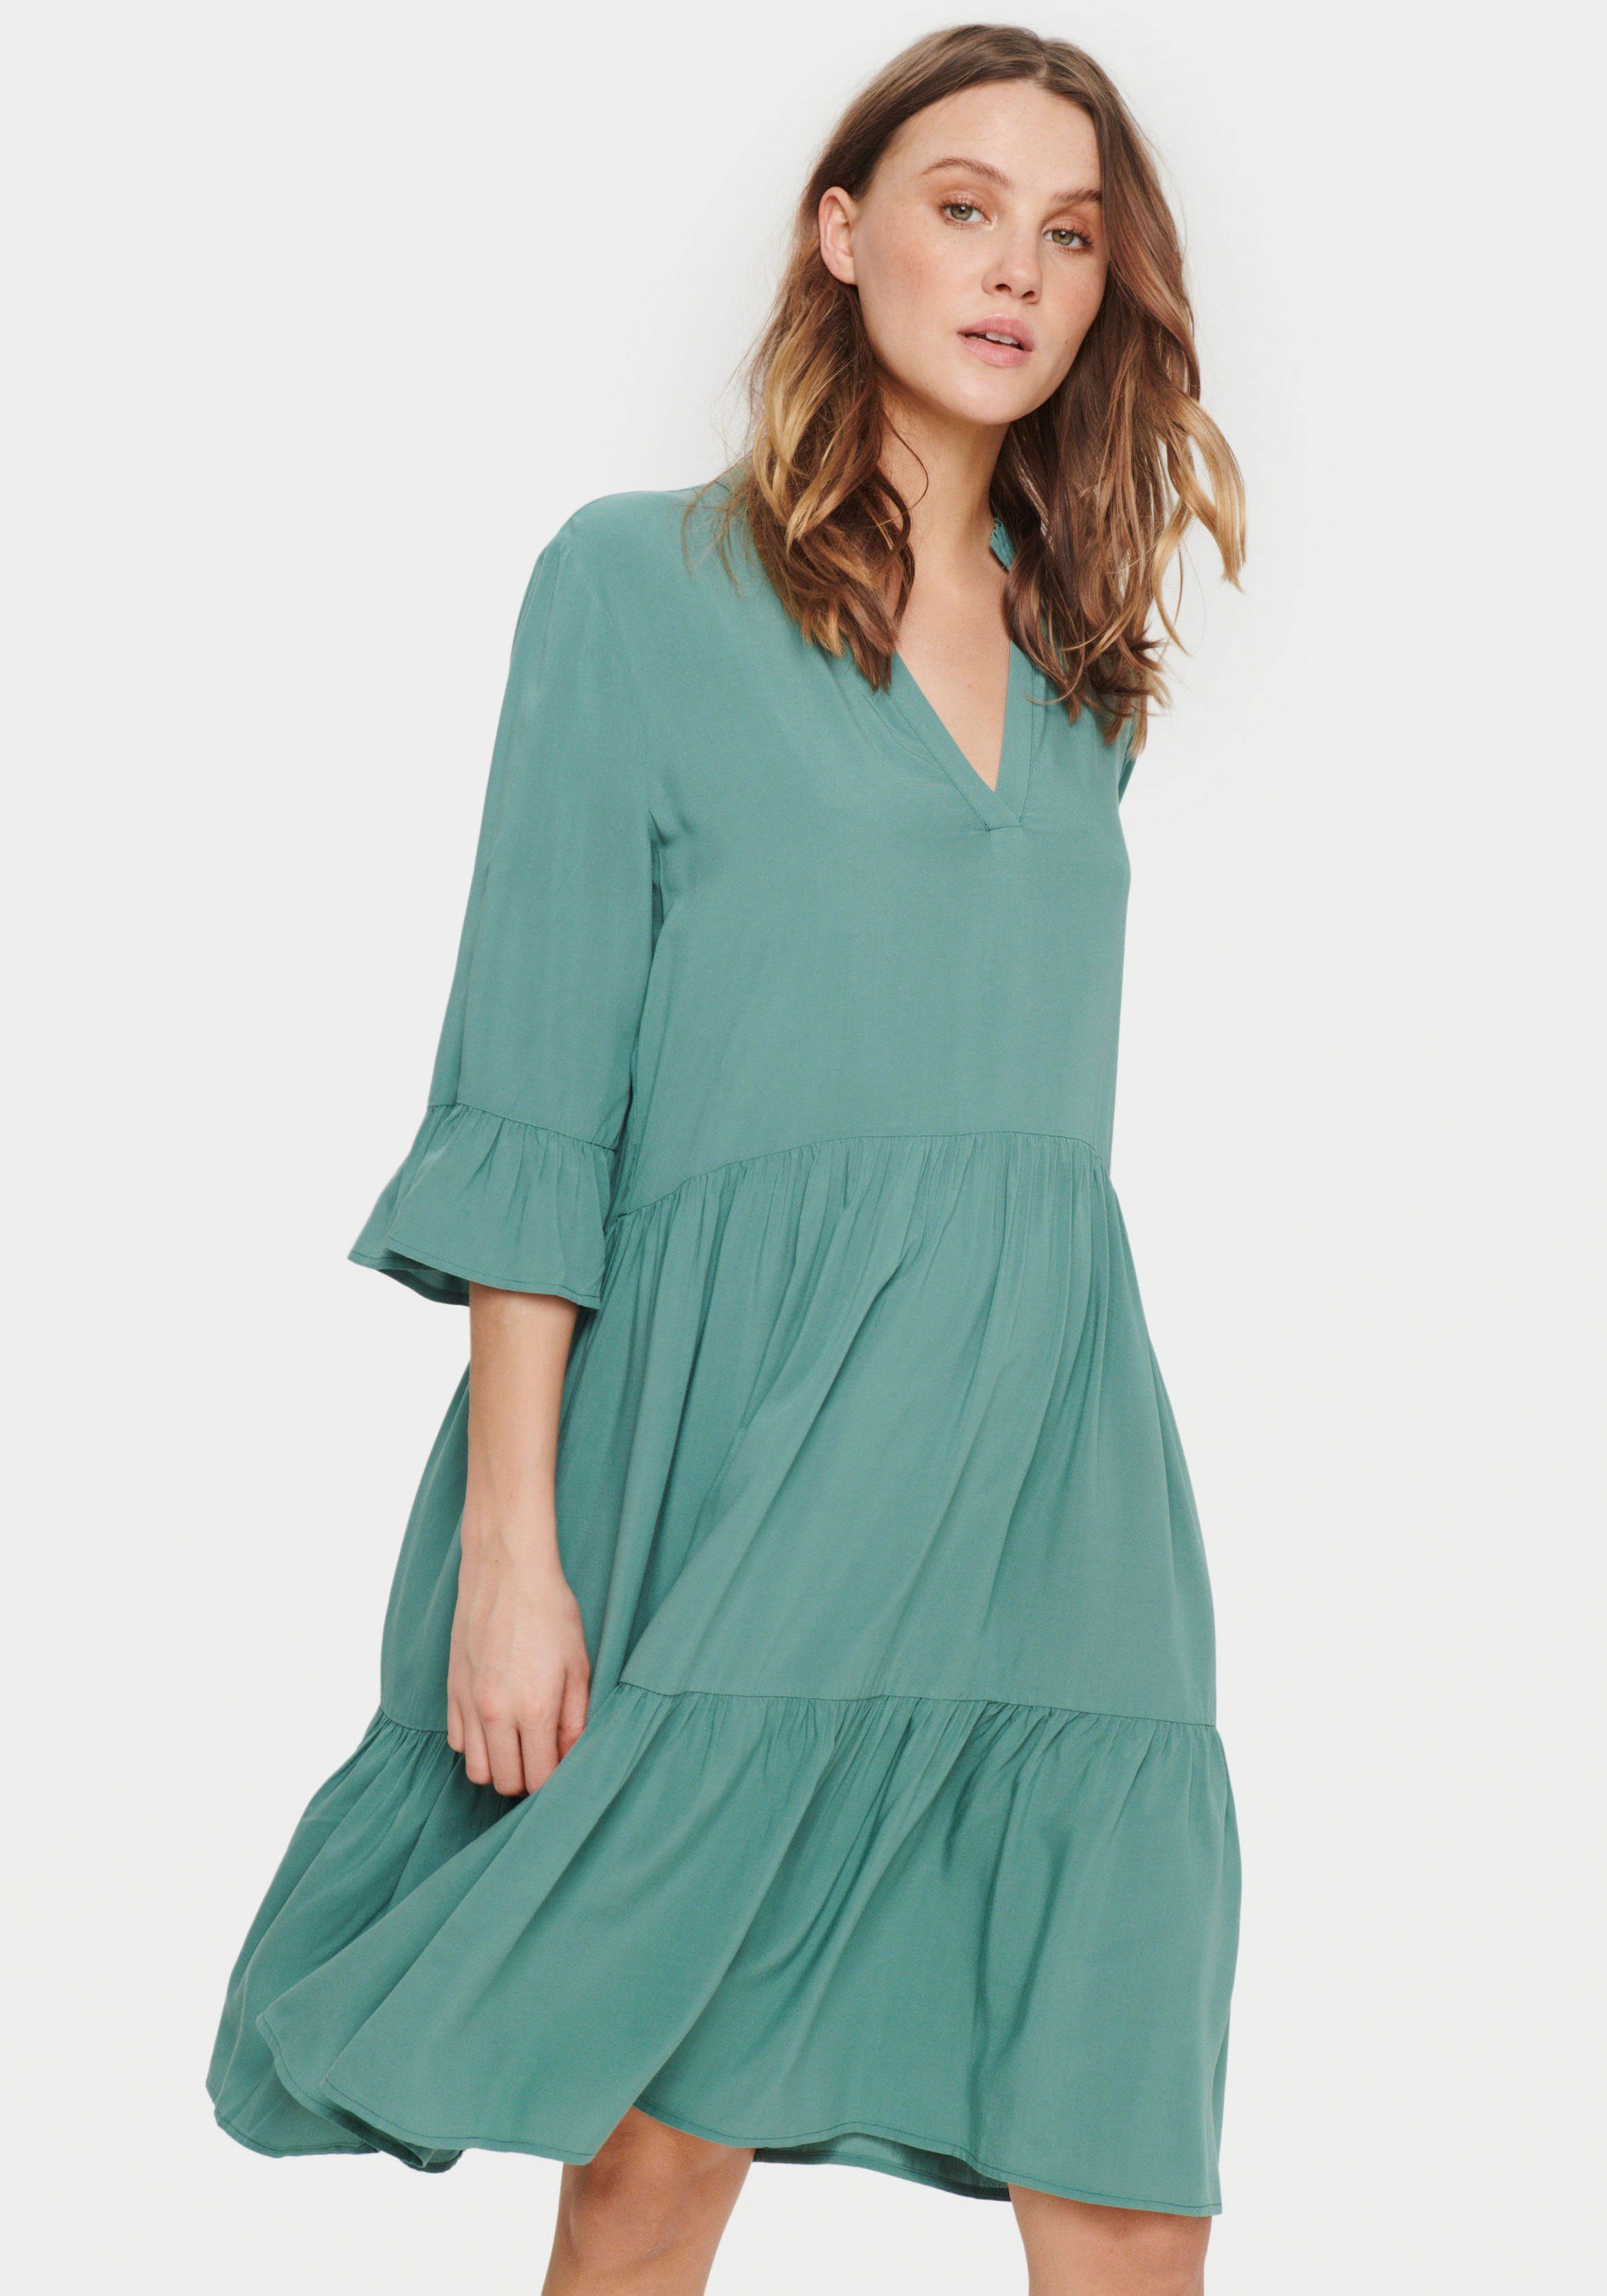 Saint Tropez Sommerkleid EdaSZ Dress mit Volant und 3/4 Ärmel Sagebrush Green